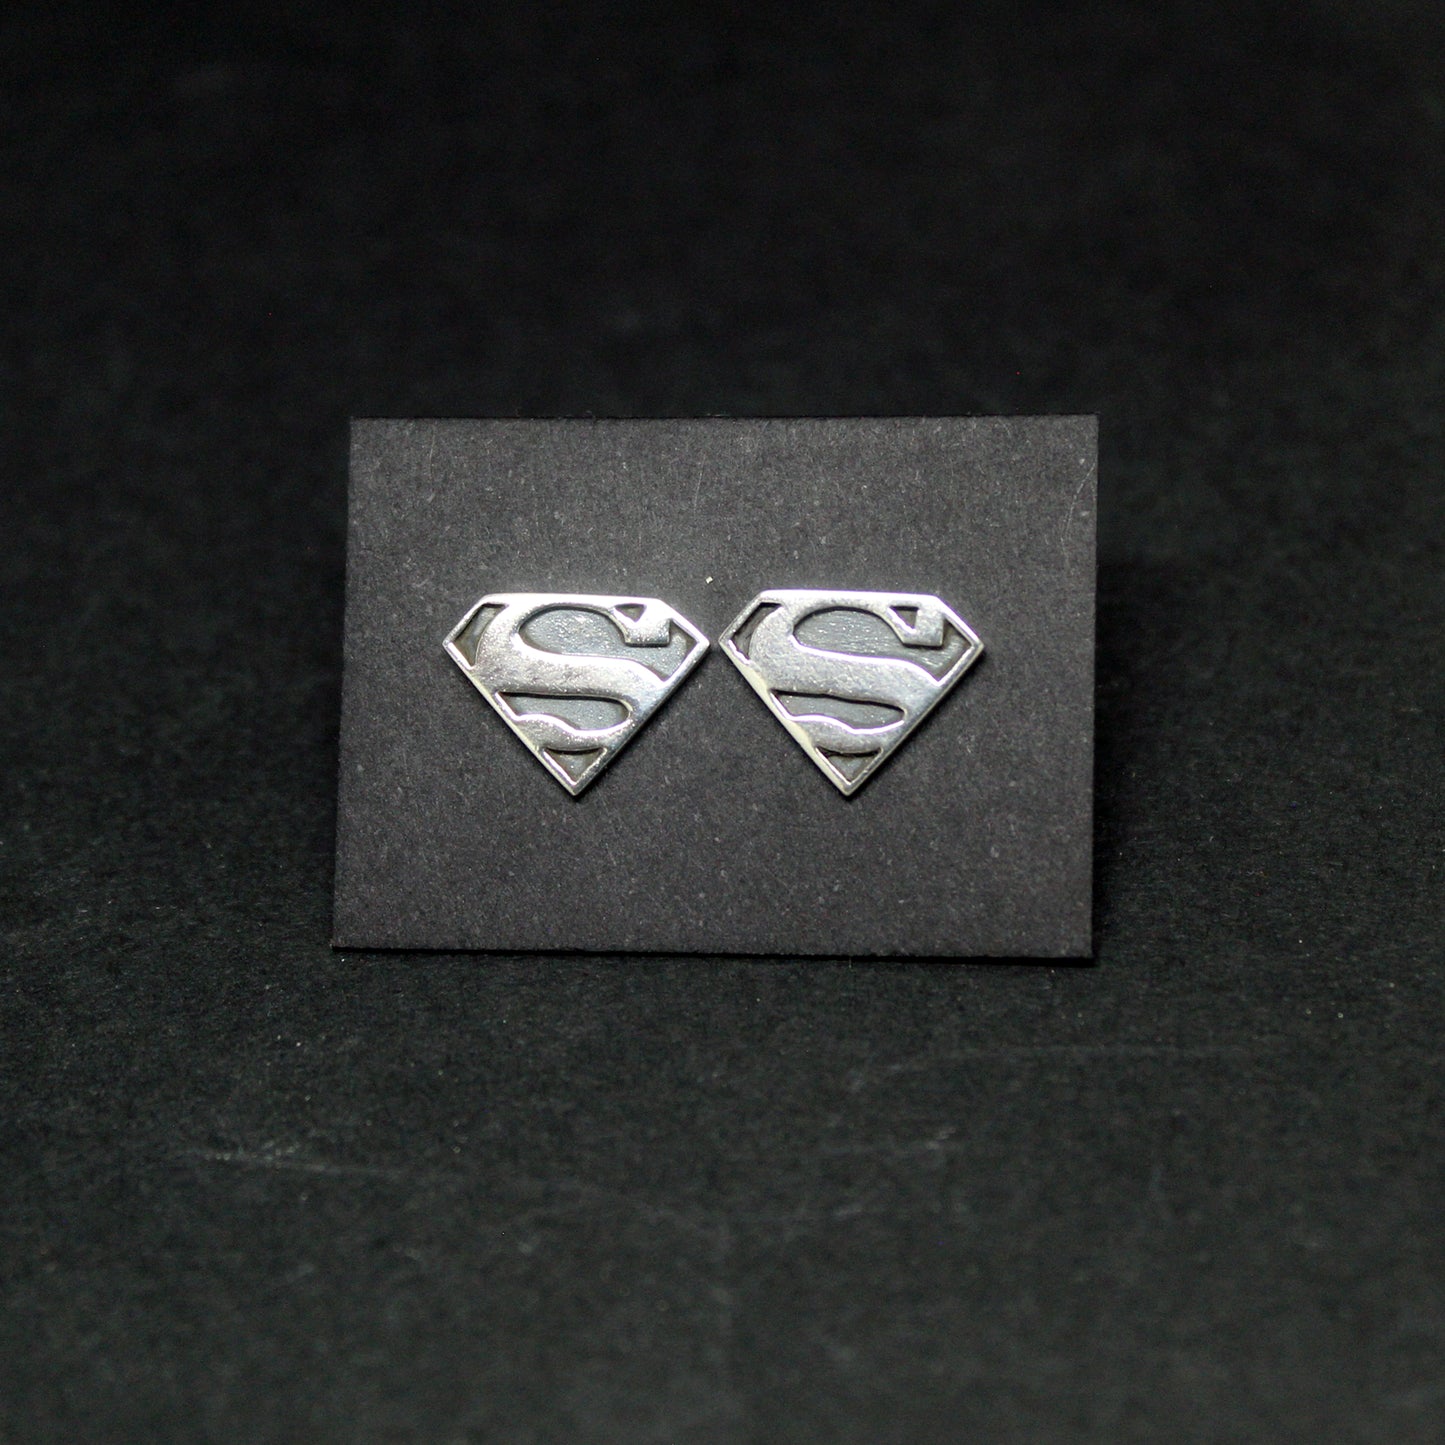 Superman earrings in 925 silver